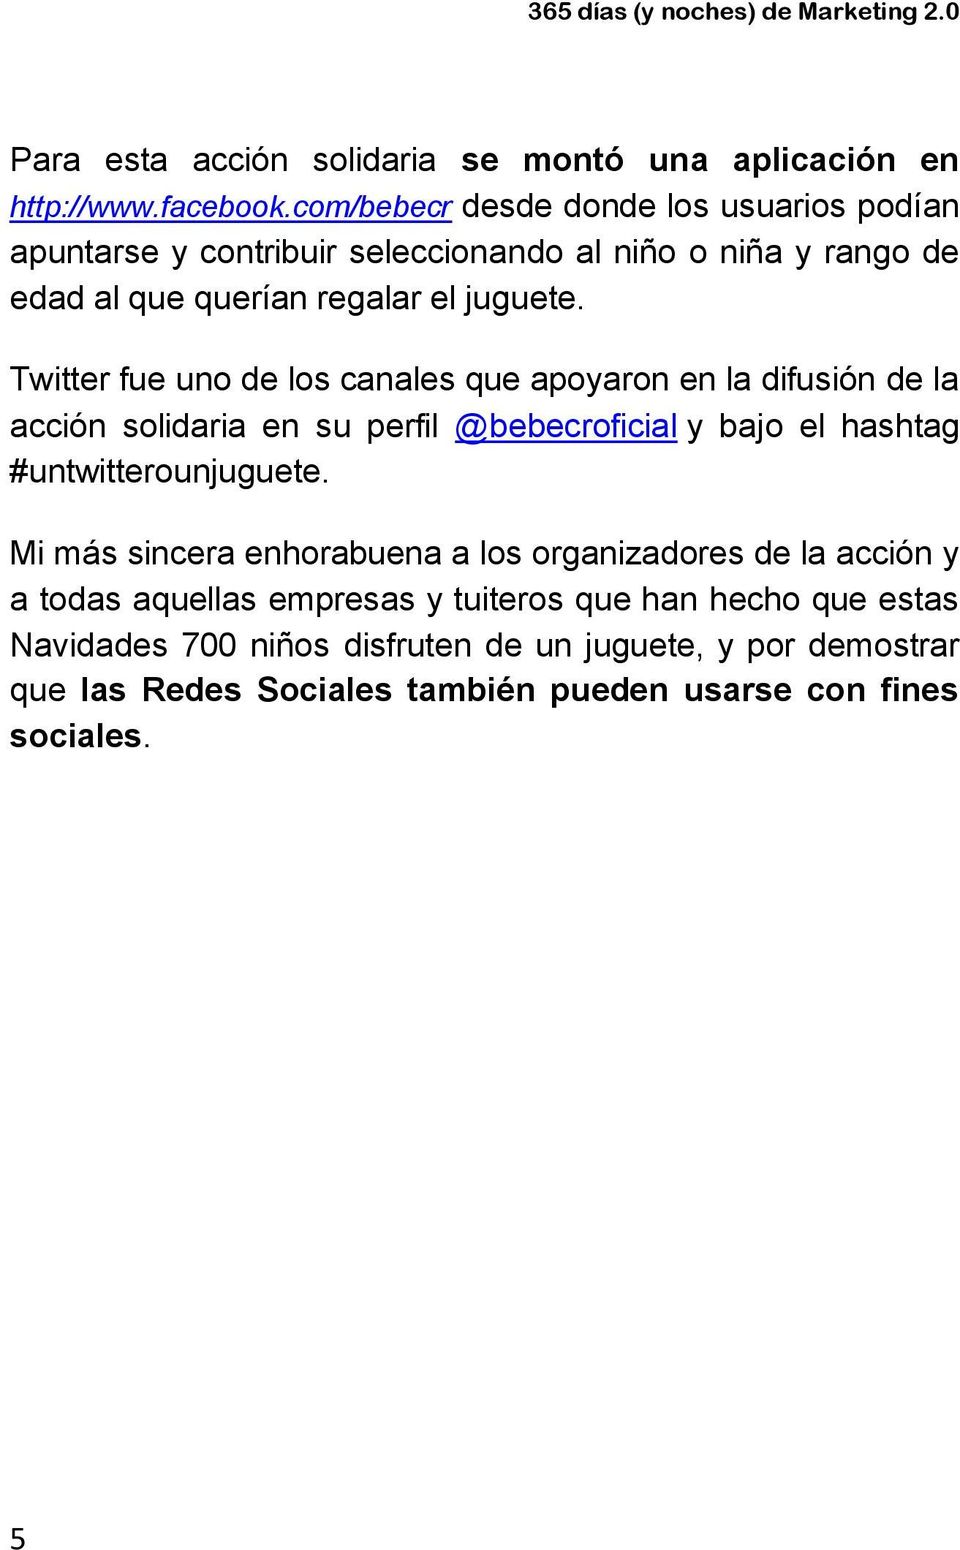 Twitter fue uno de los canales que apoyaron en la difusión de la acción solidaria en su perfil @bebecroficial y bajo el hashtag #untwitterounjuguete.